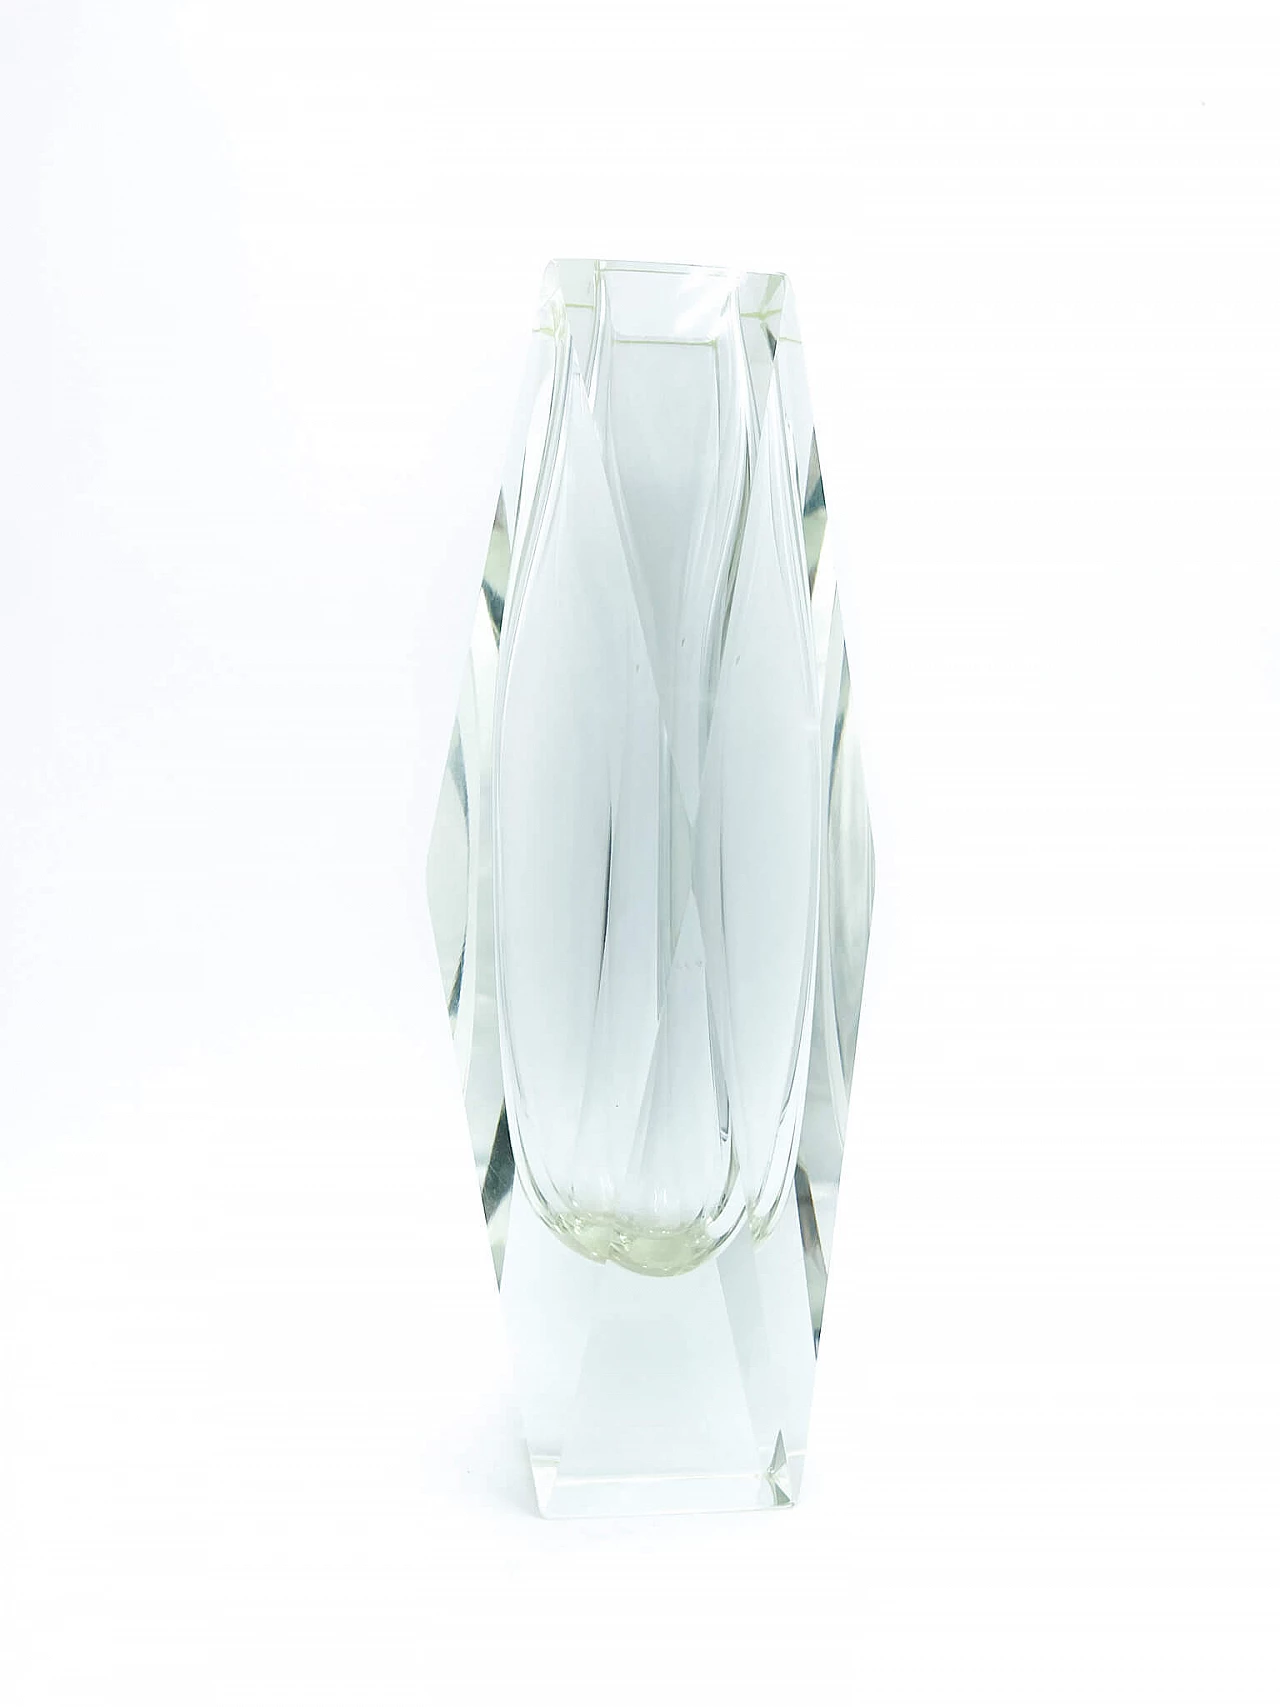 Square Murano glass vase by Flavio Poli and Seguso, 1970s 1